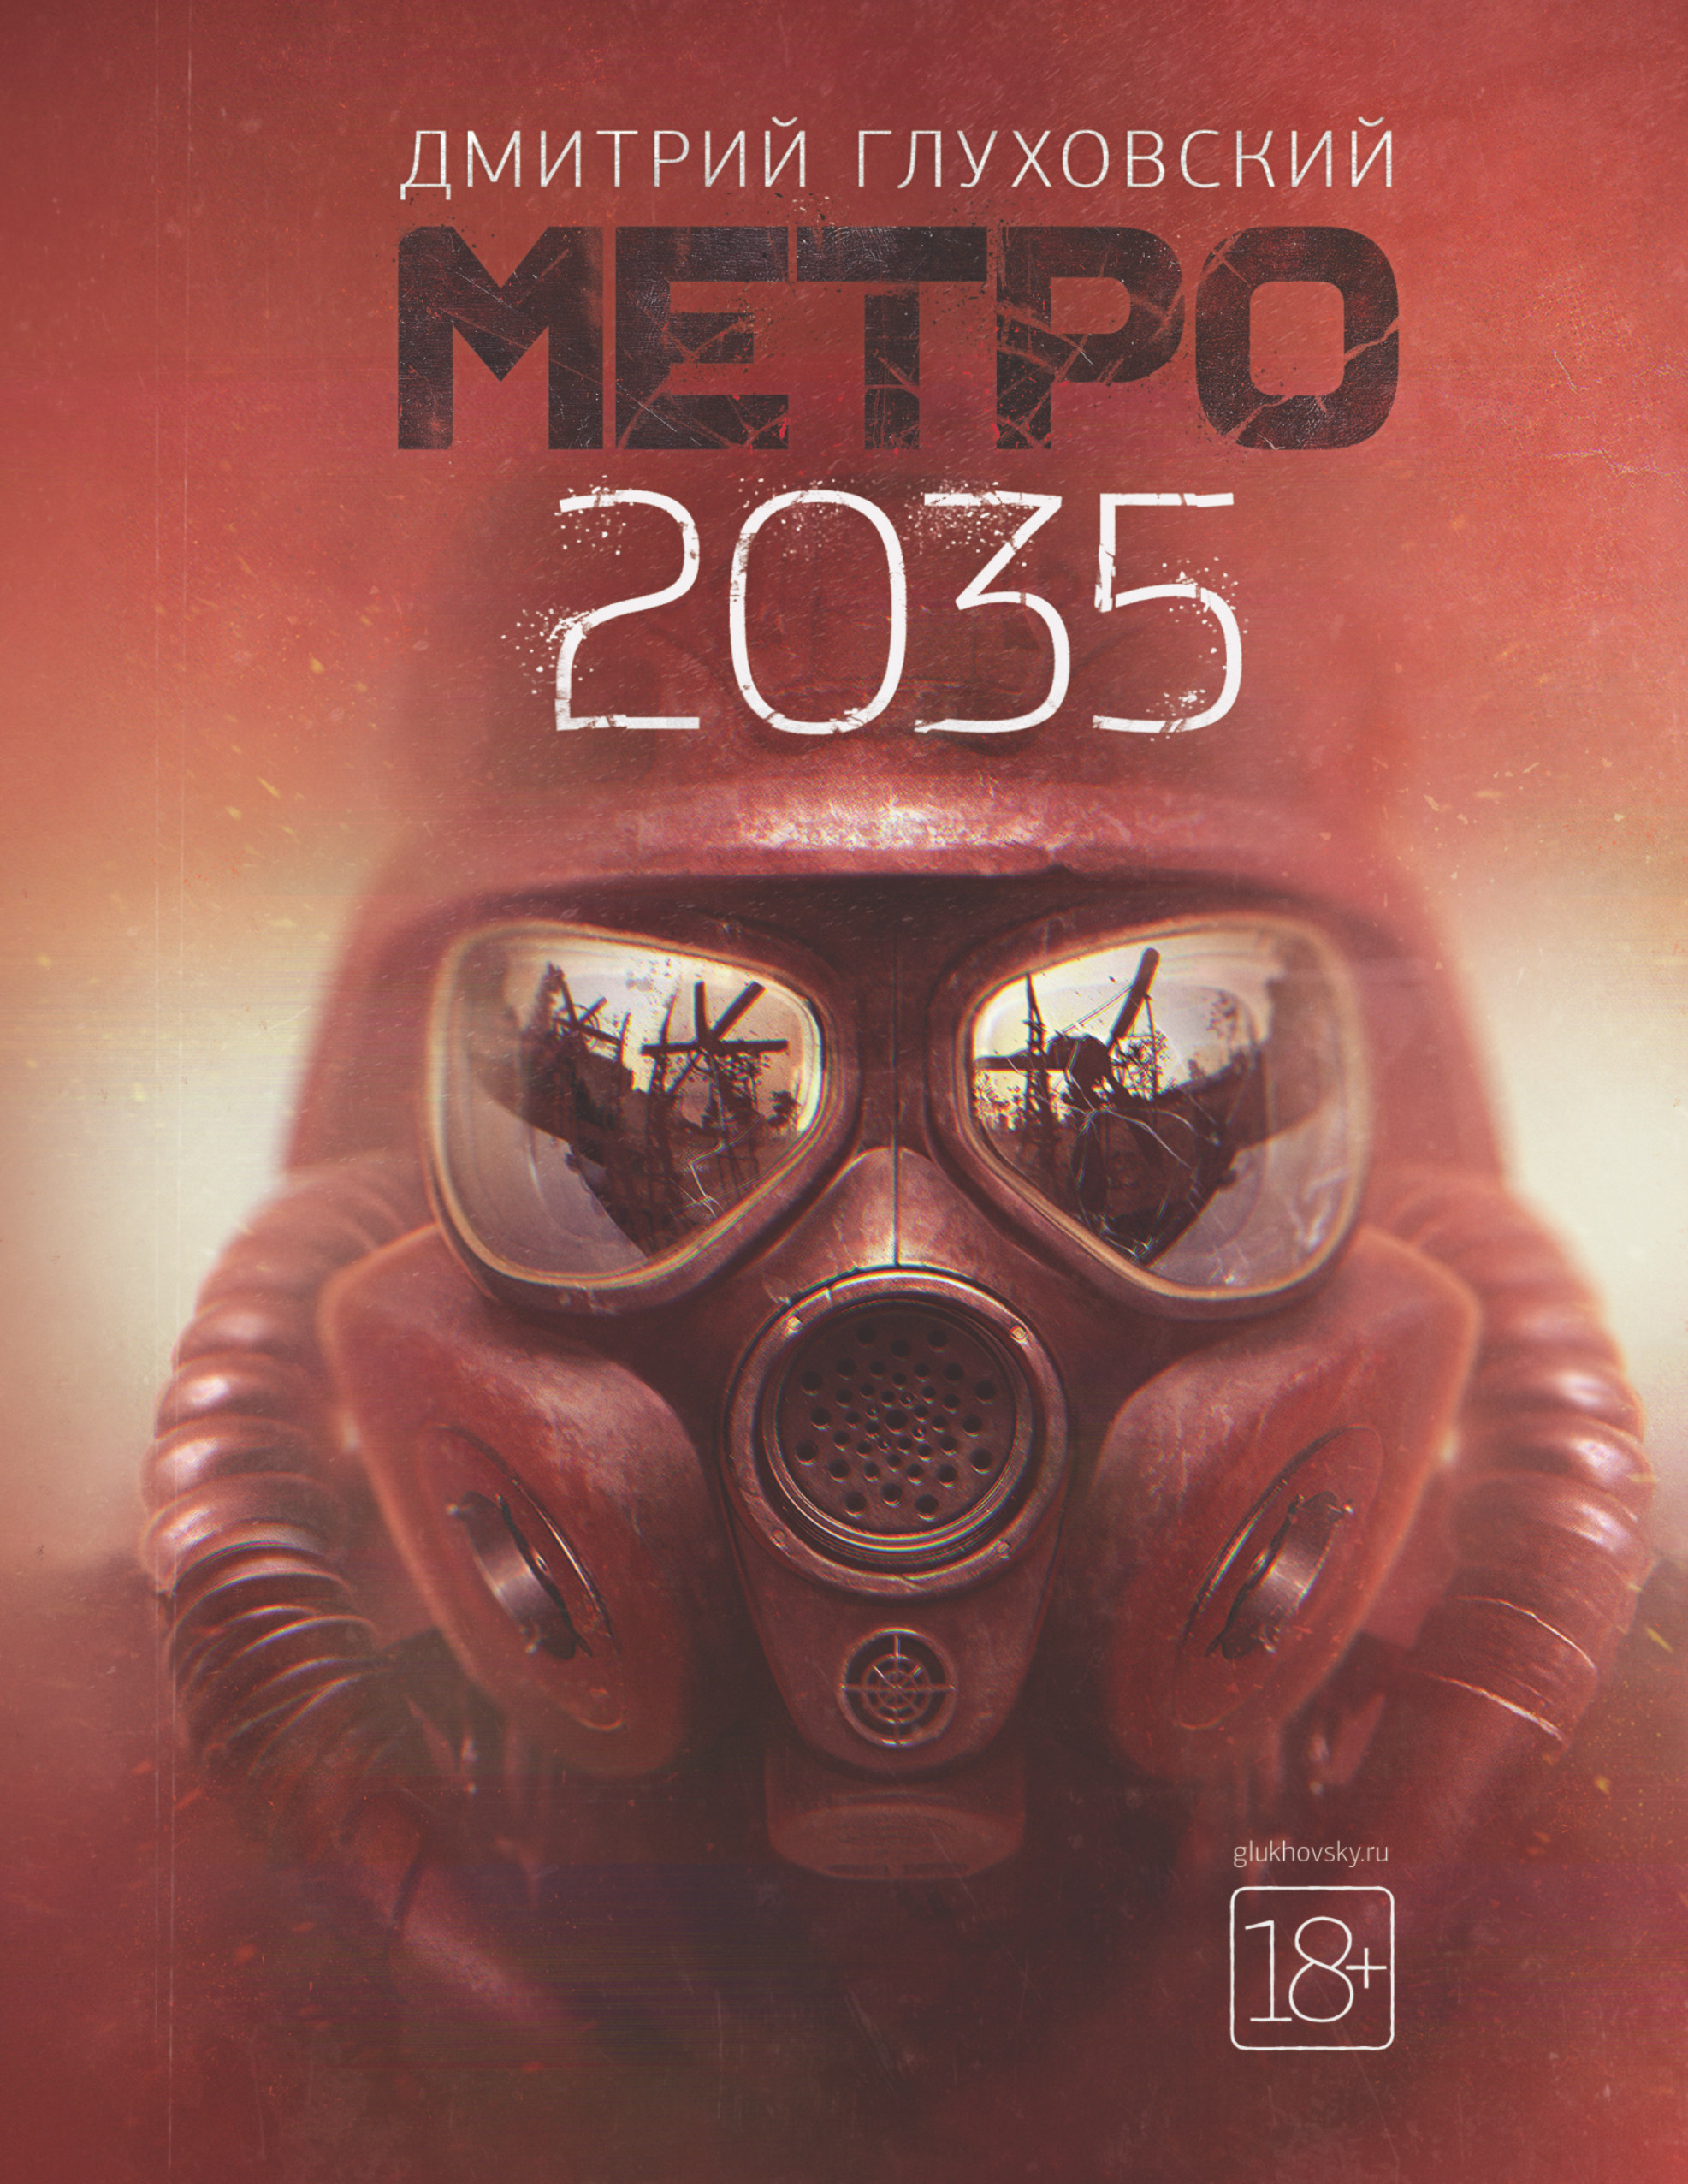 Метро 2035 метро 2035 эмбрион начало мори юрий